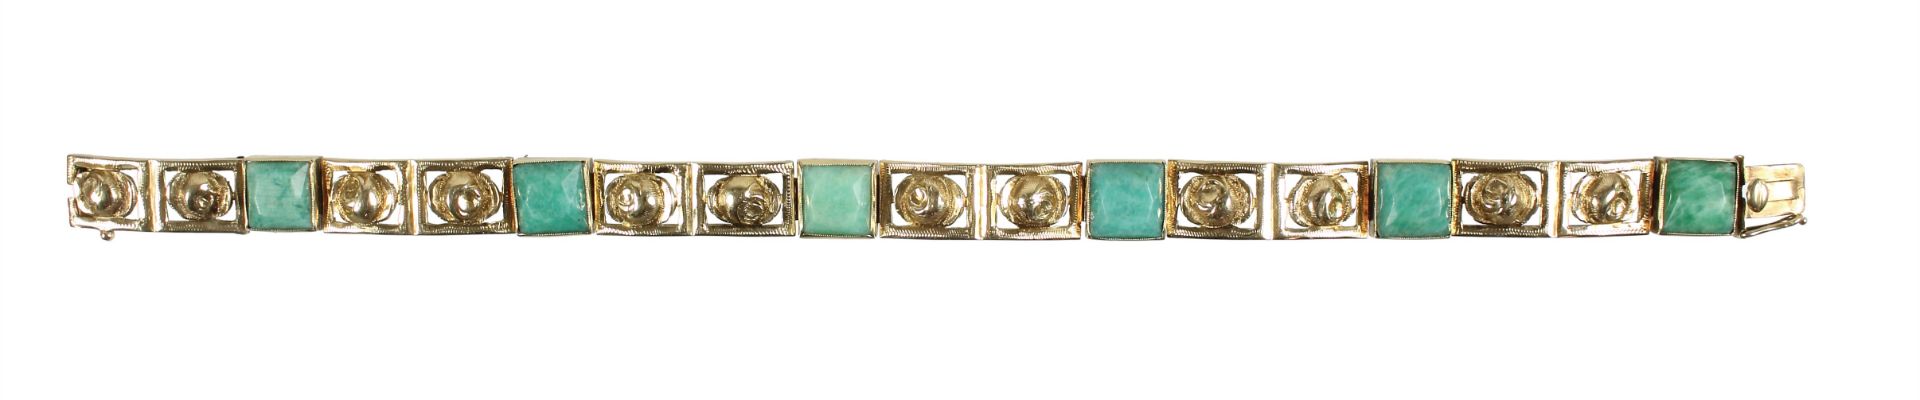 Armband, ART-DECO 1930/40er Jahre, GG 585/000, 6 quadratische Amazonite, Goldelemente mit ...